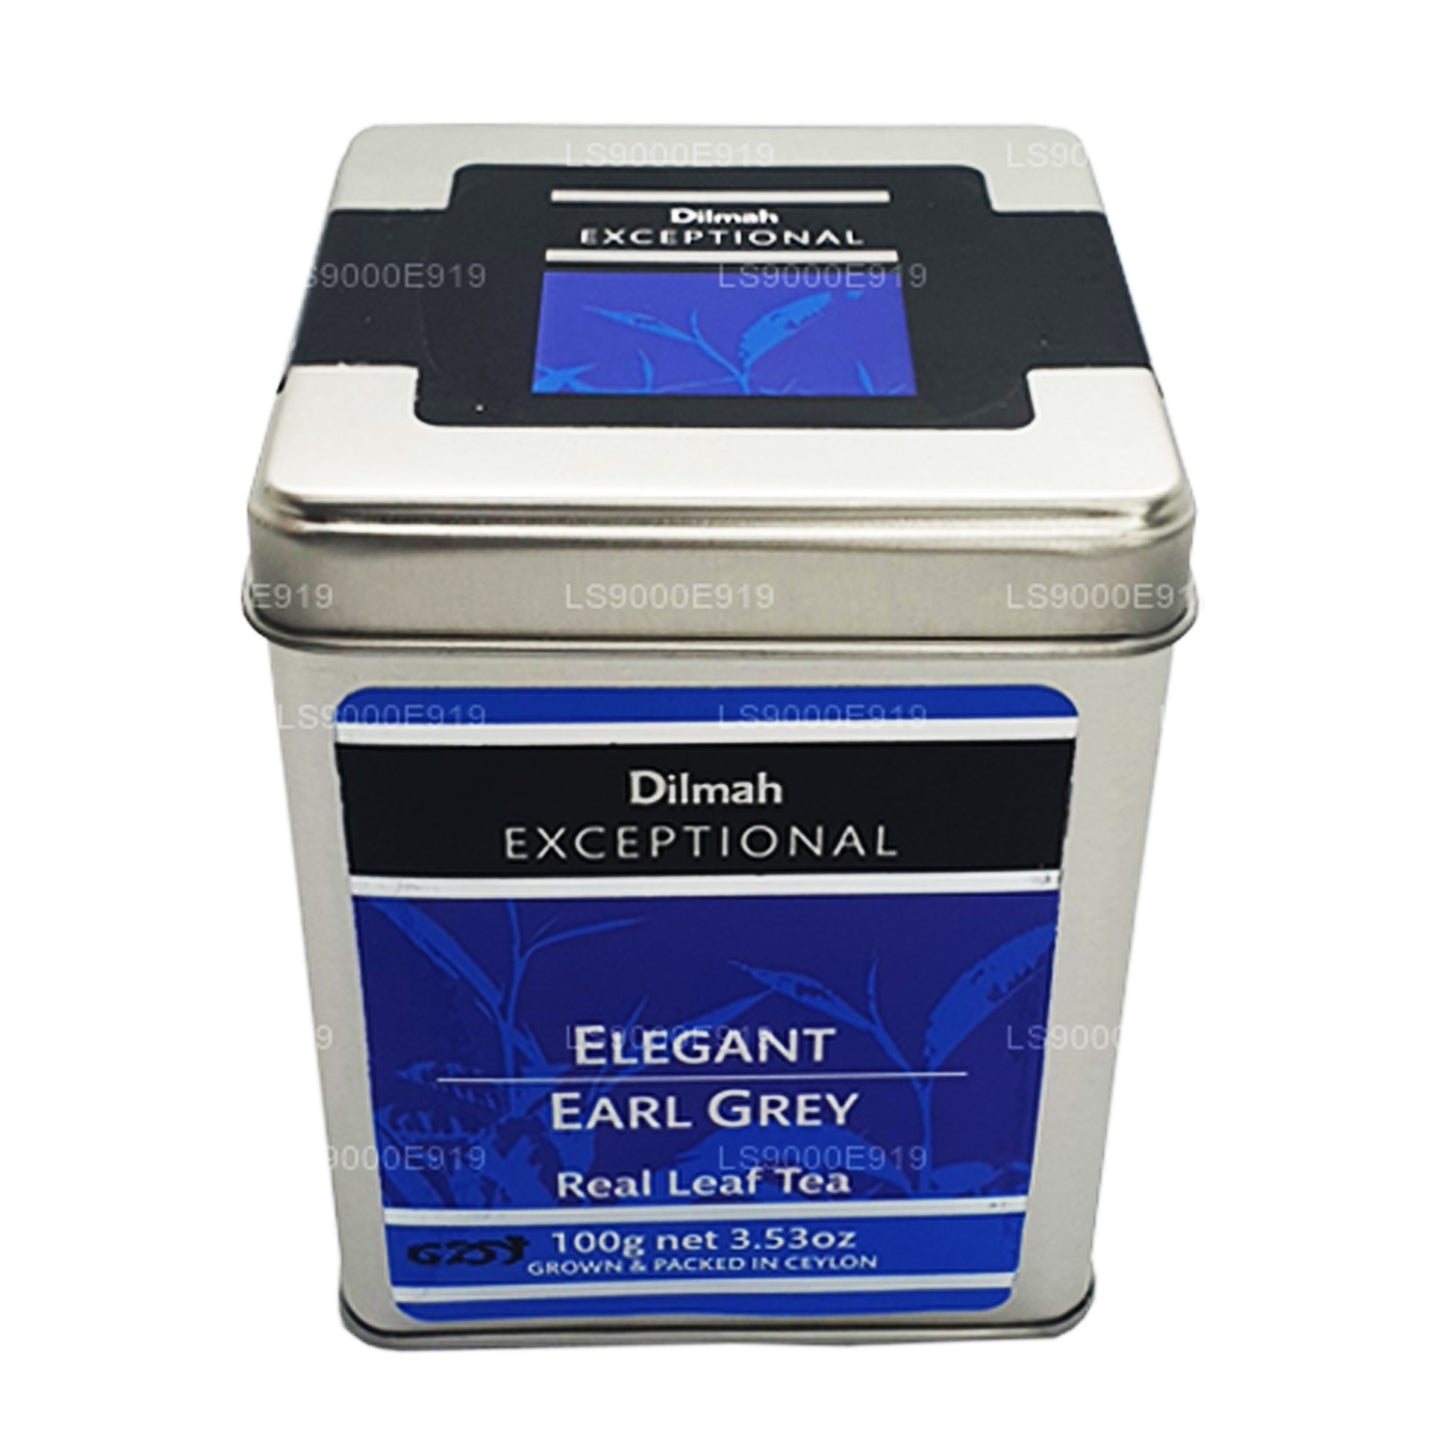 Dilmah exceptionella Elegant Earl Grey Real Leaf Tea (100g)